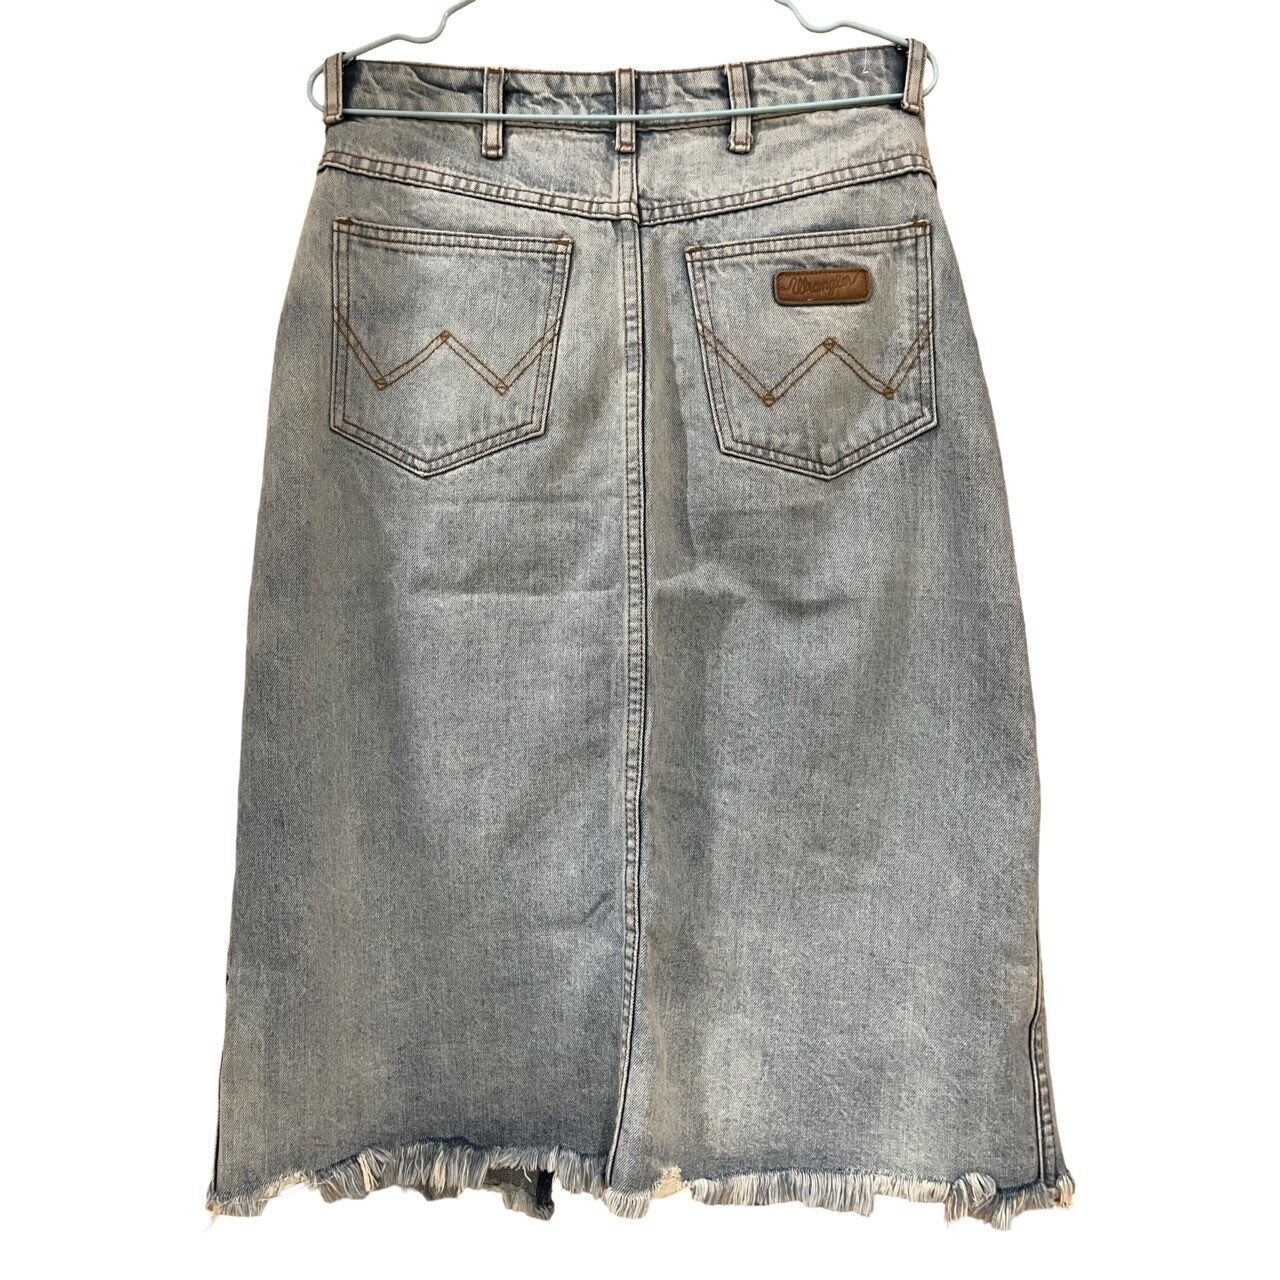 Wrangler Light Blue Washed Jeans Midi Skirt